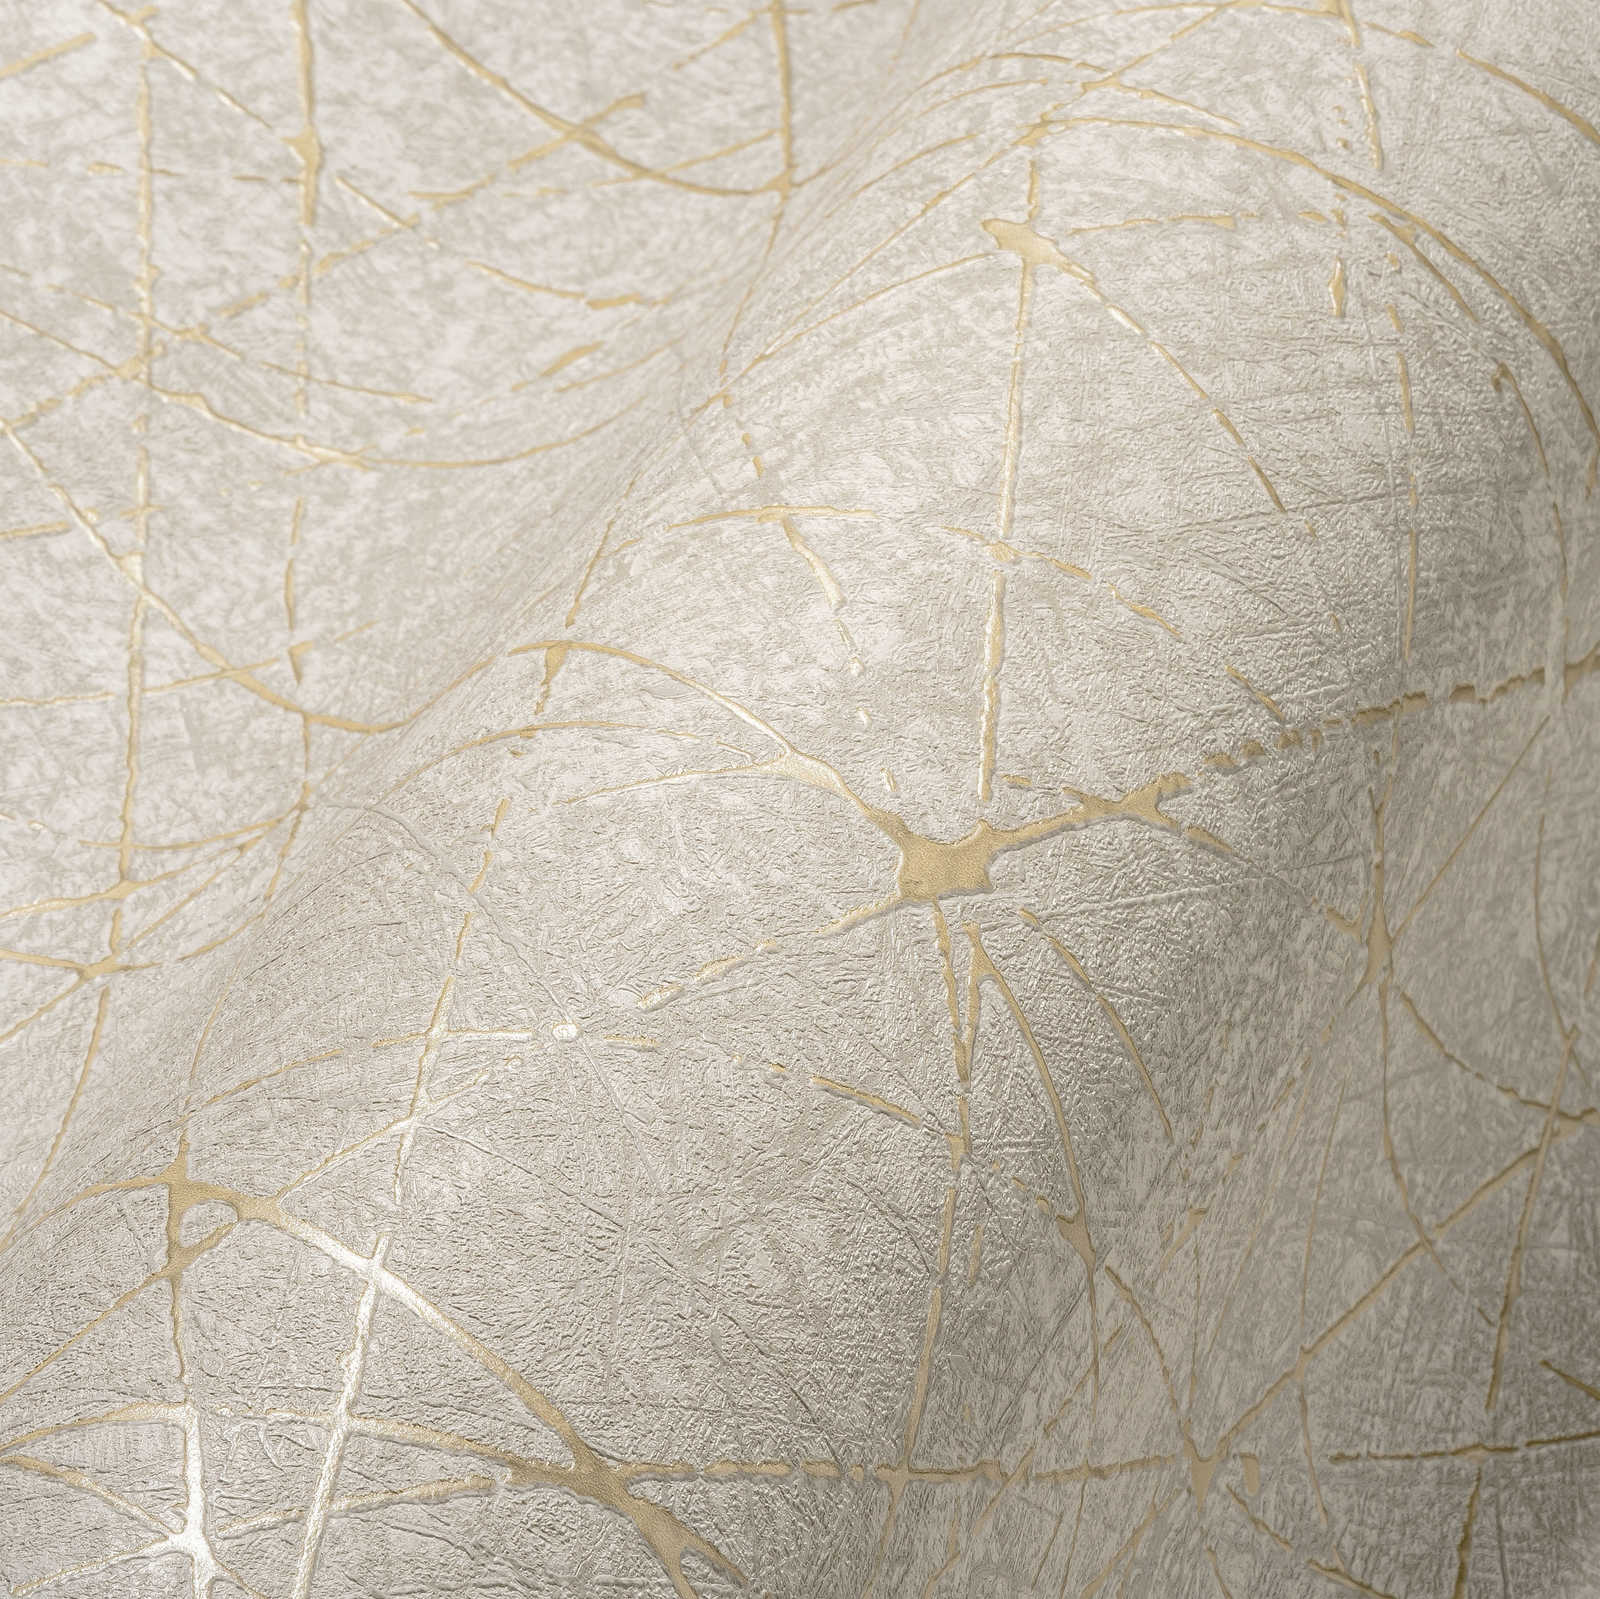             Vliesbehang met grafische lijnen & metaaleffect - crème, grijs, goud
        